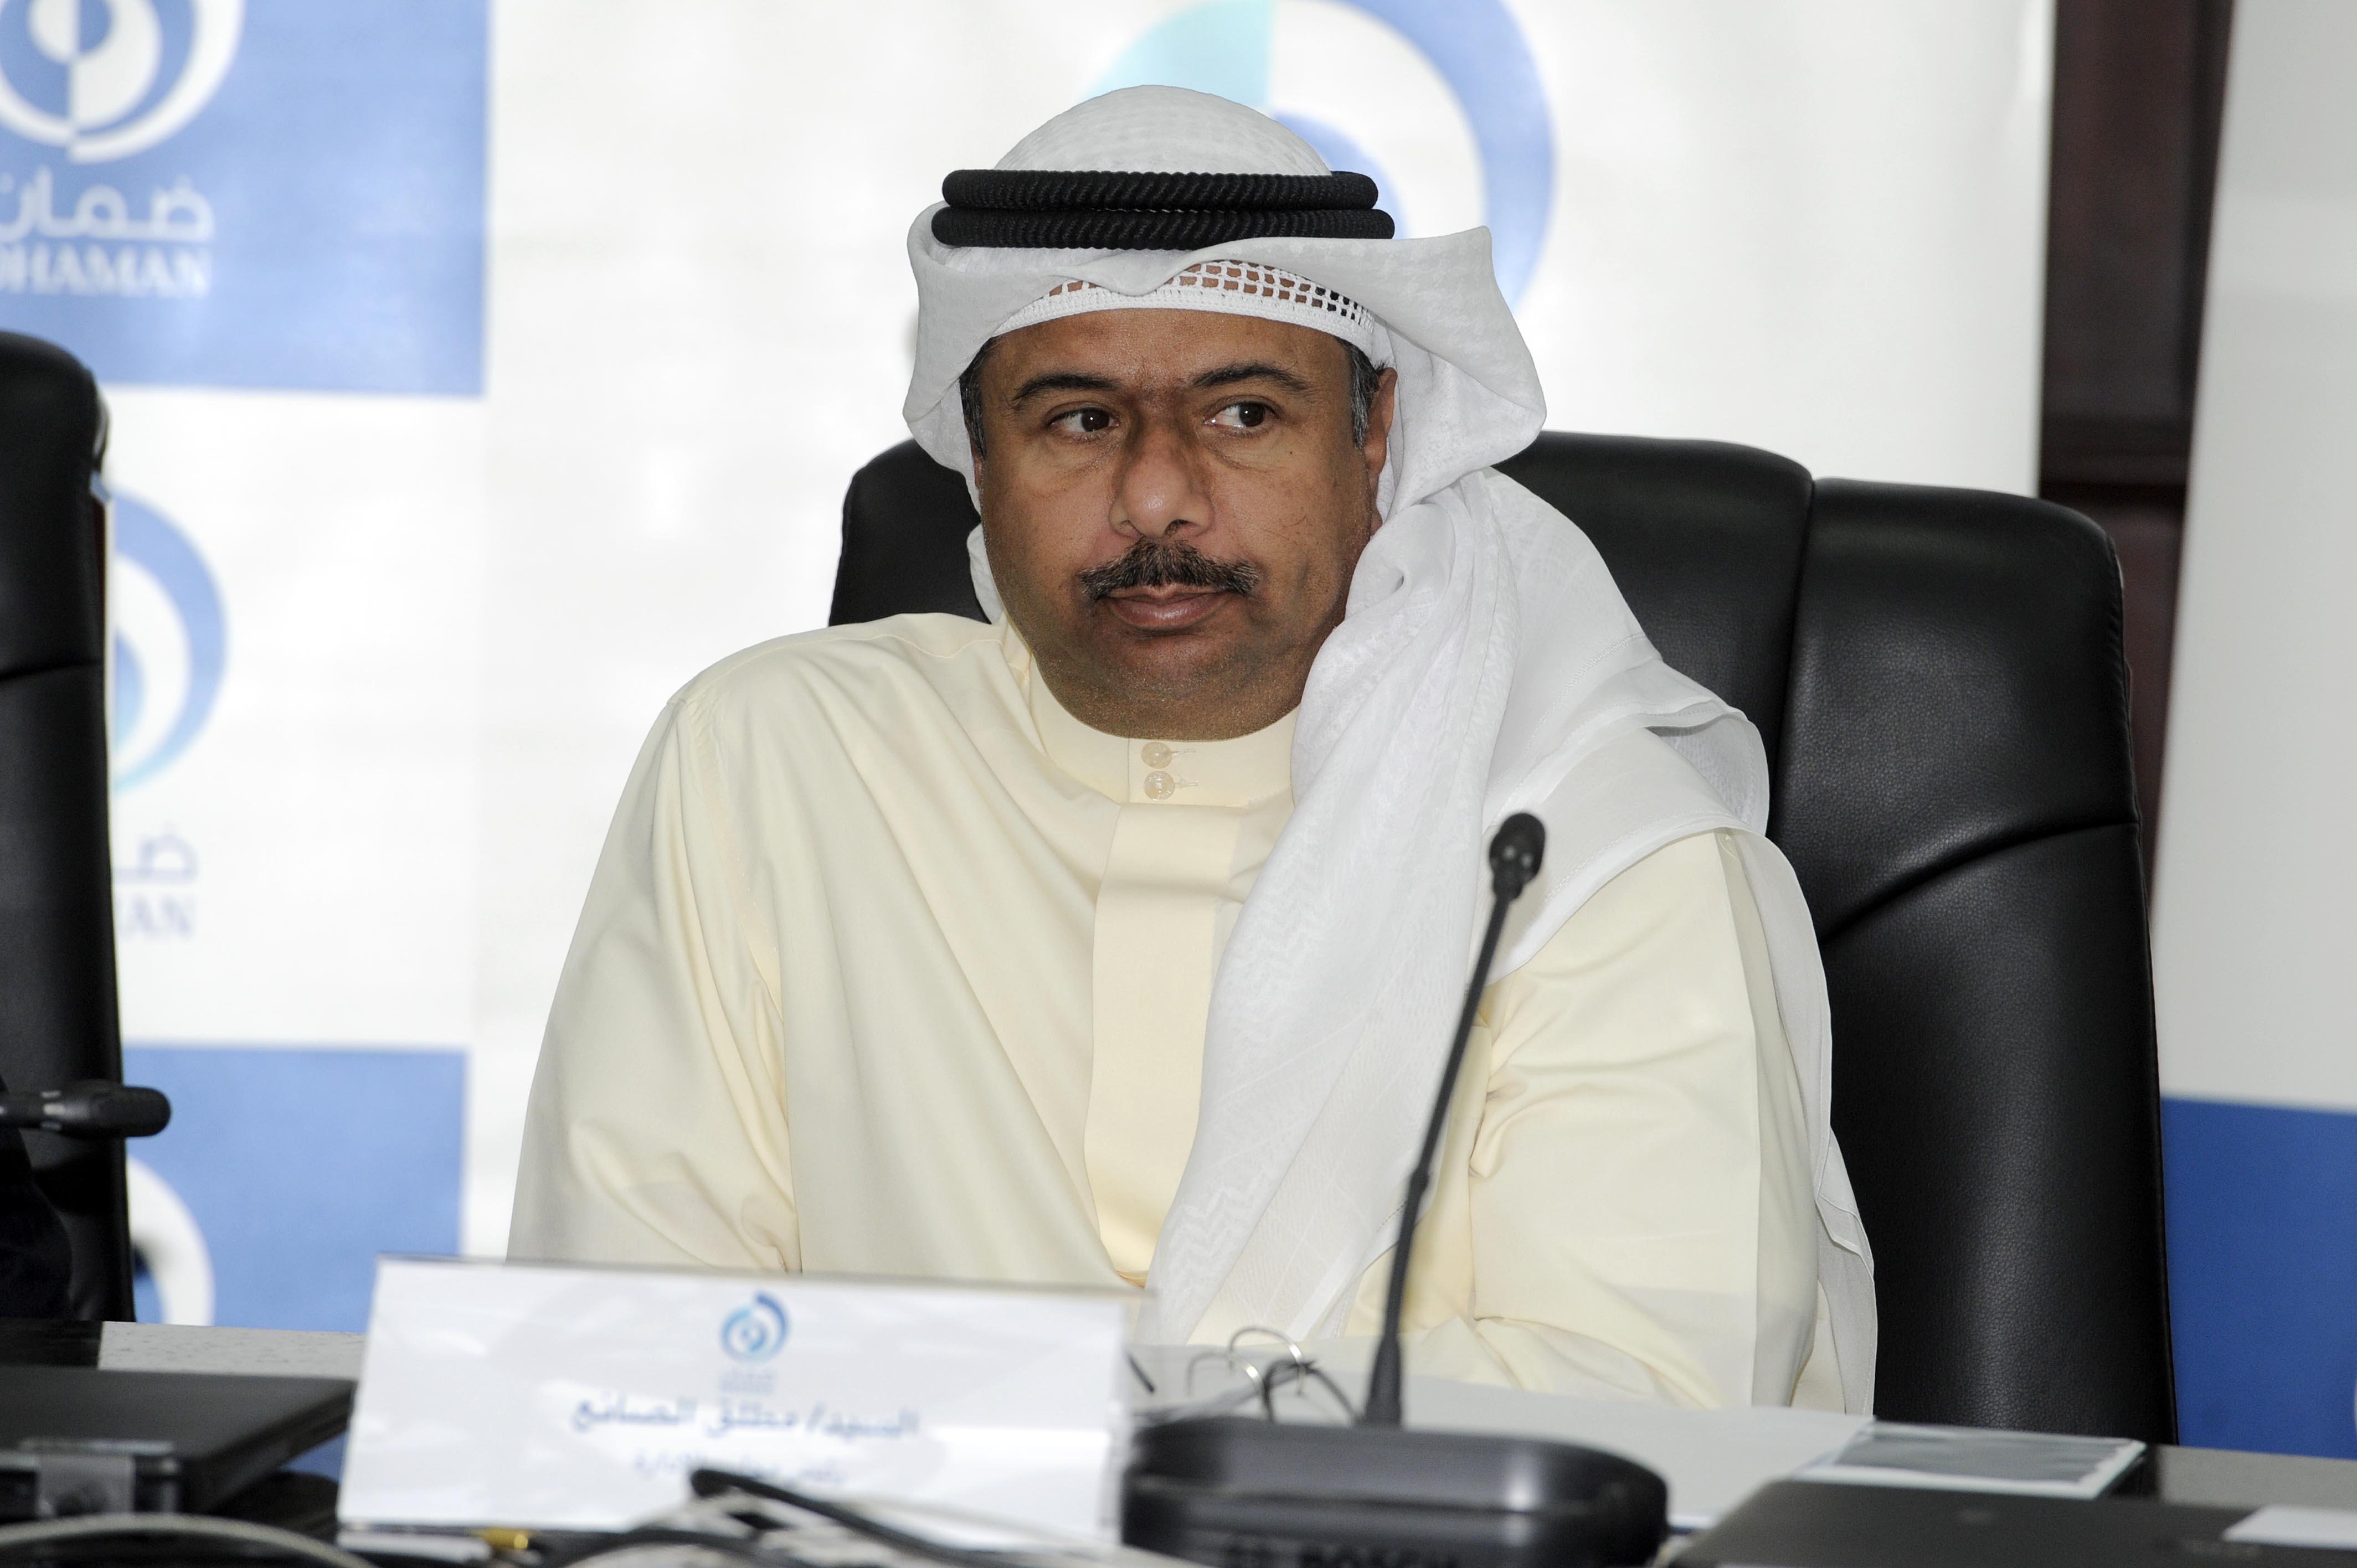 KAPP Director General Mutlaq Al-Sanea